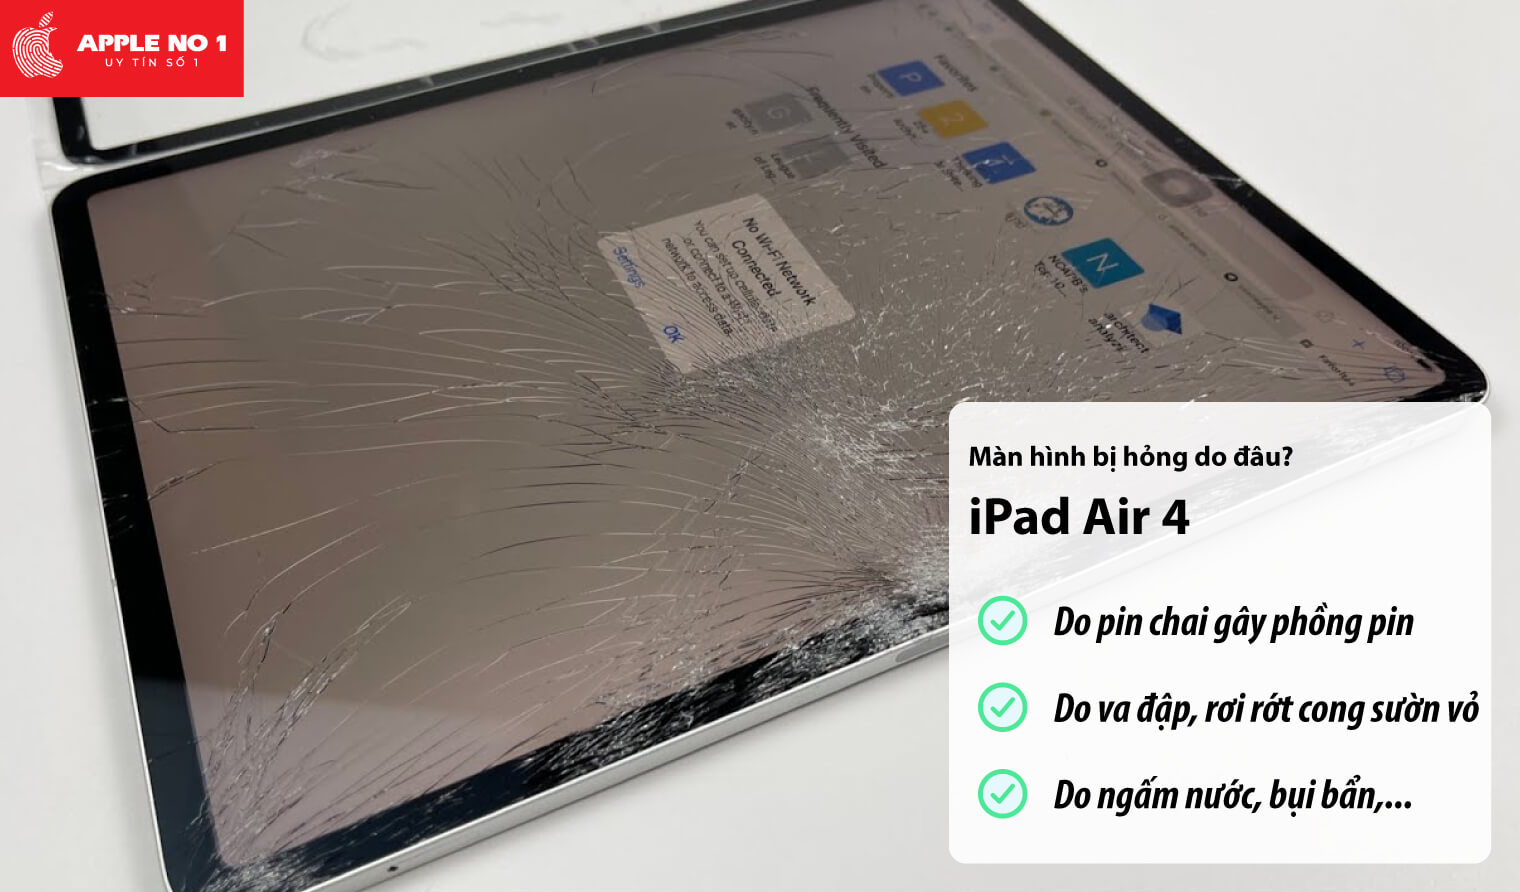 Màn hình iPad air 4 bị hỏng do đâu?